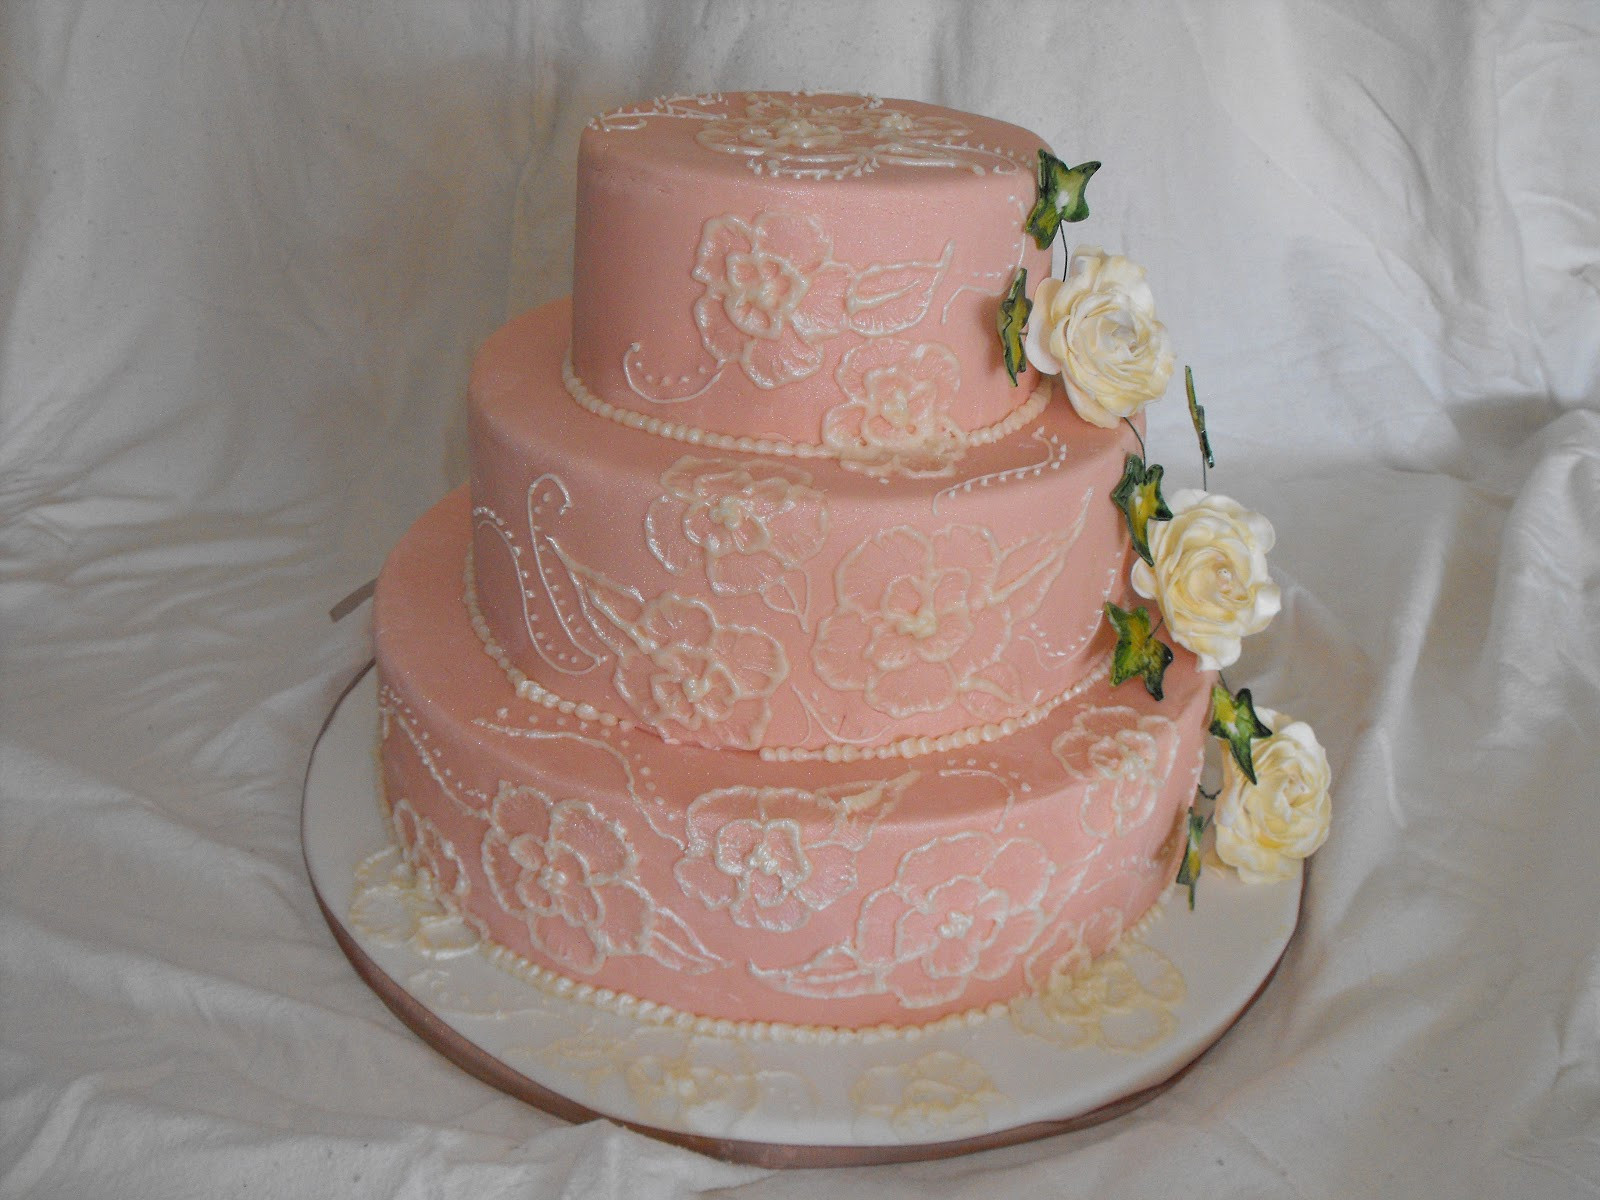 Vintage Style Wedding Cakes
 Caroline s Cake Craft Vintage Style Wedding Cake